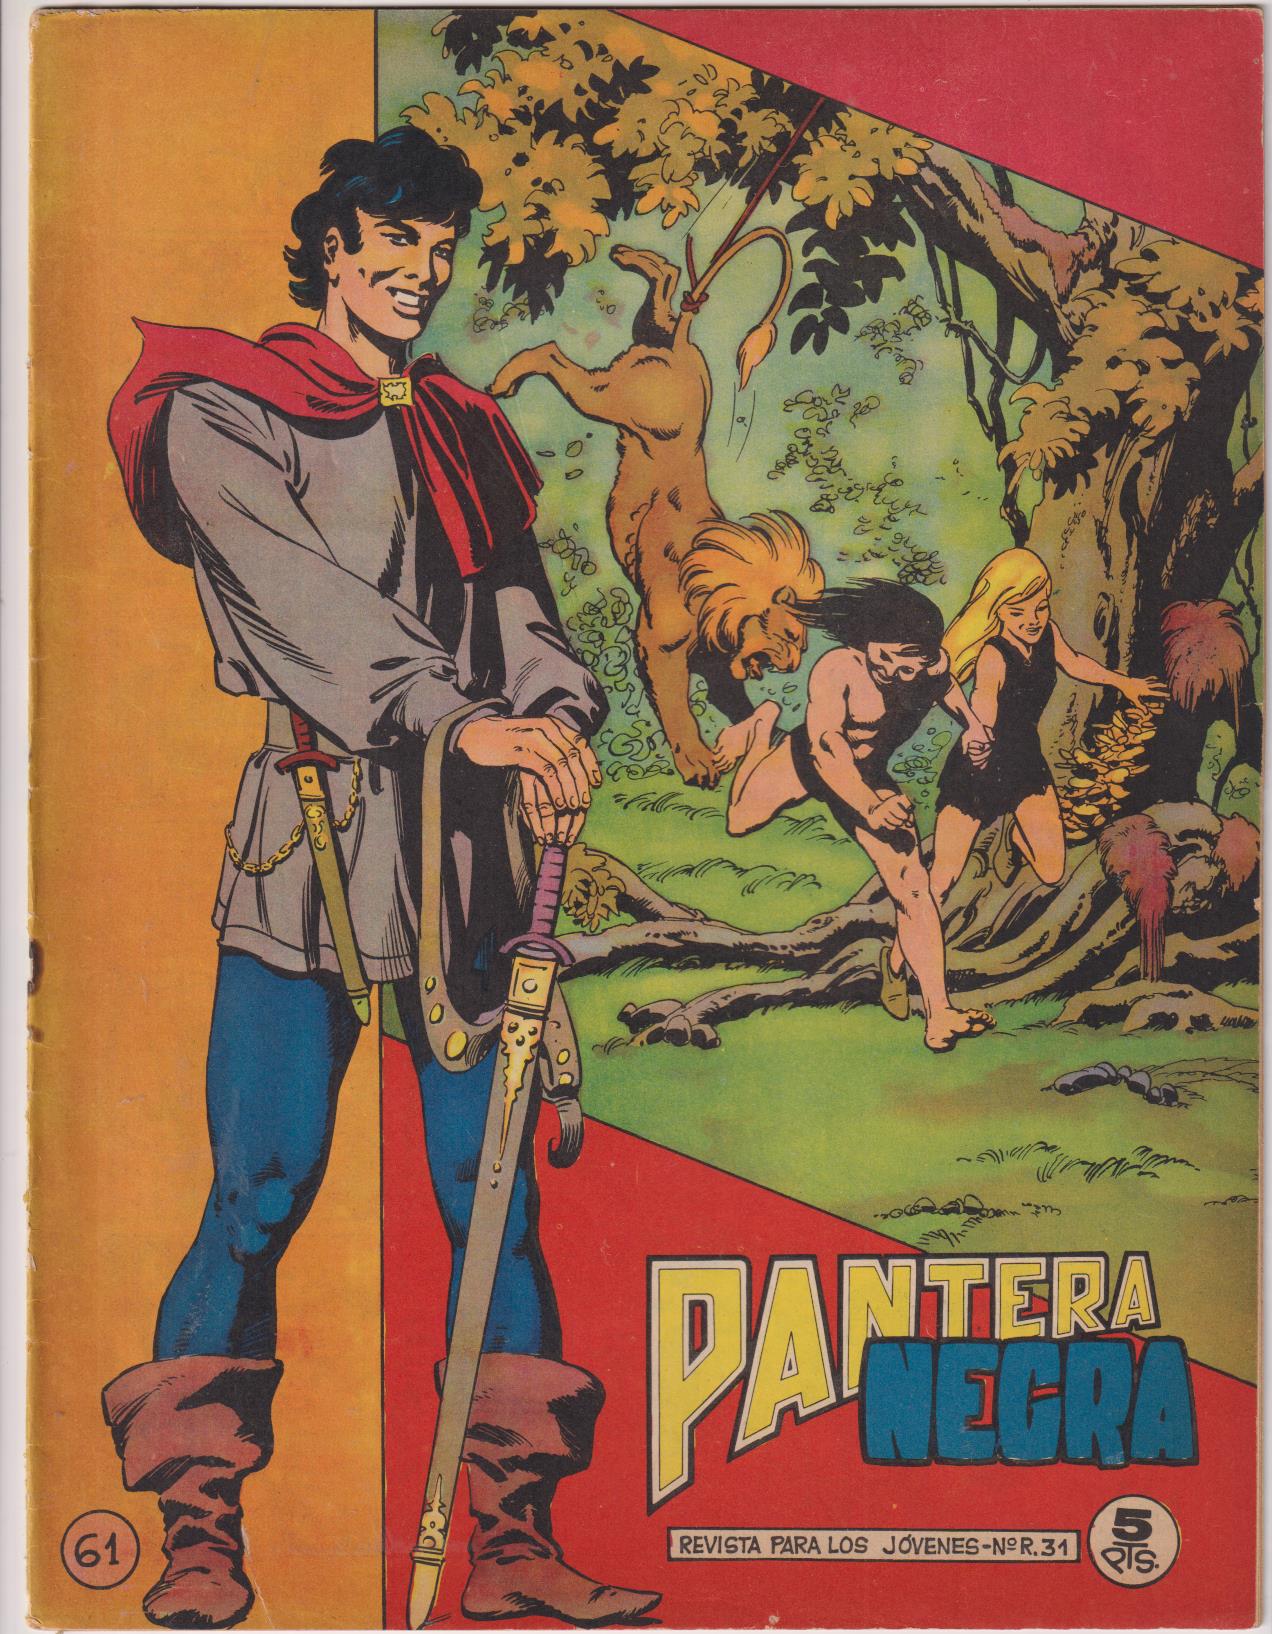 Pantera Negra Revista nº 61. Maga 1964